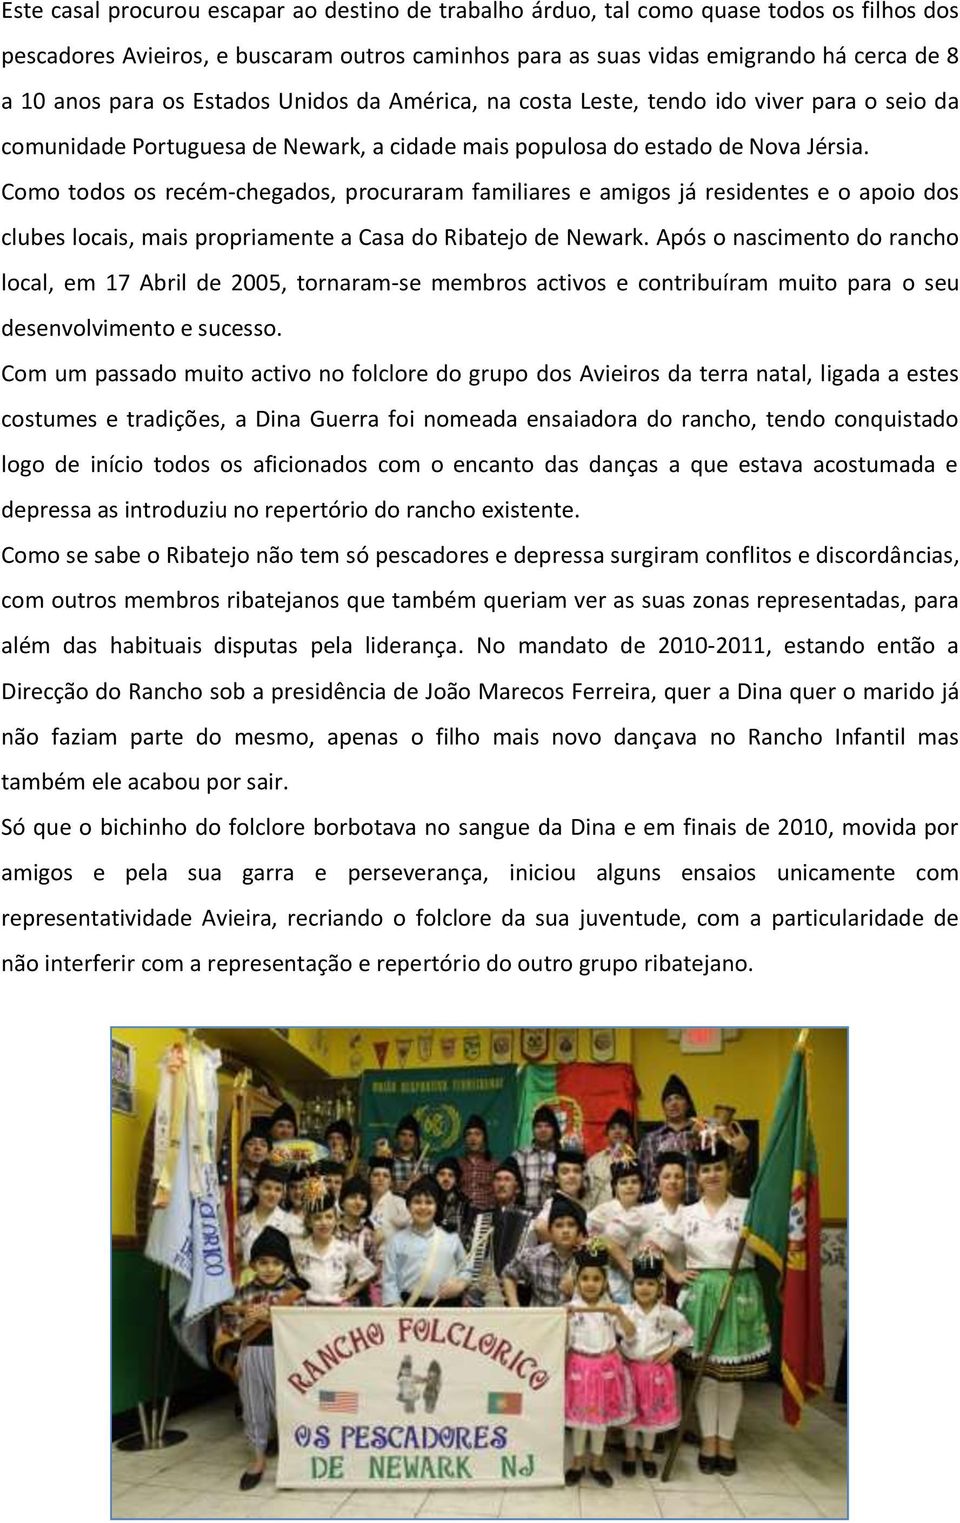 NEWARK: 28.º ANIVERSÁRIO DO RANCHO FOLCLÓRICO “DANÇA NA EIRA” -  LusoAmericano